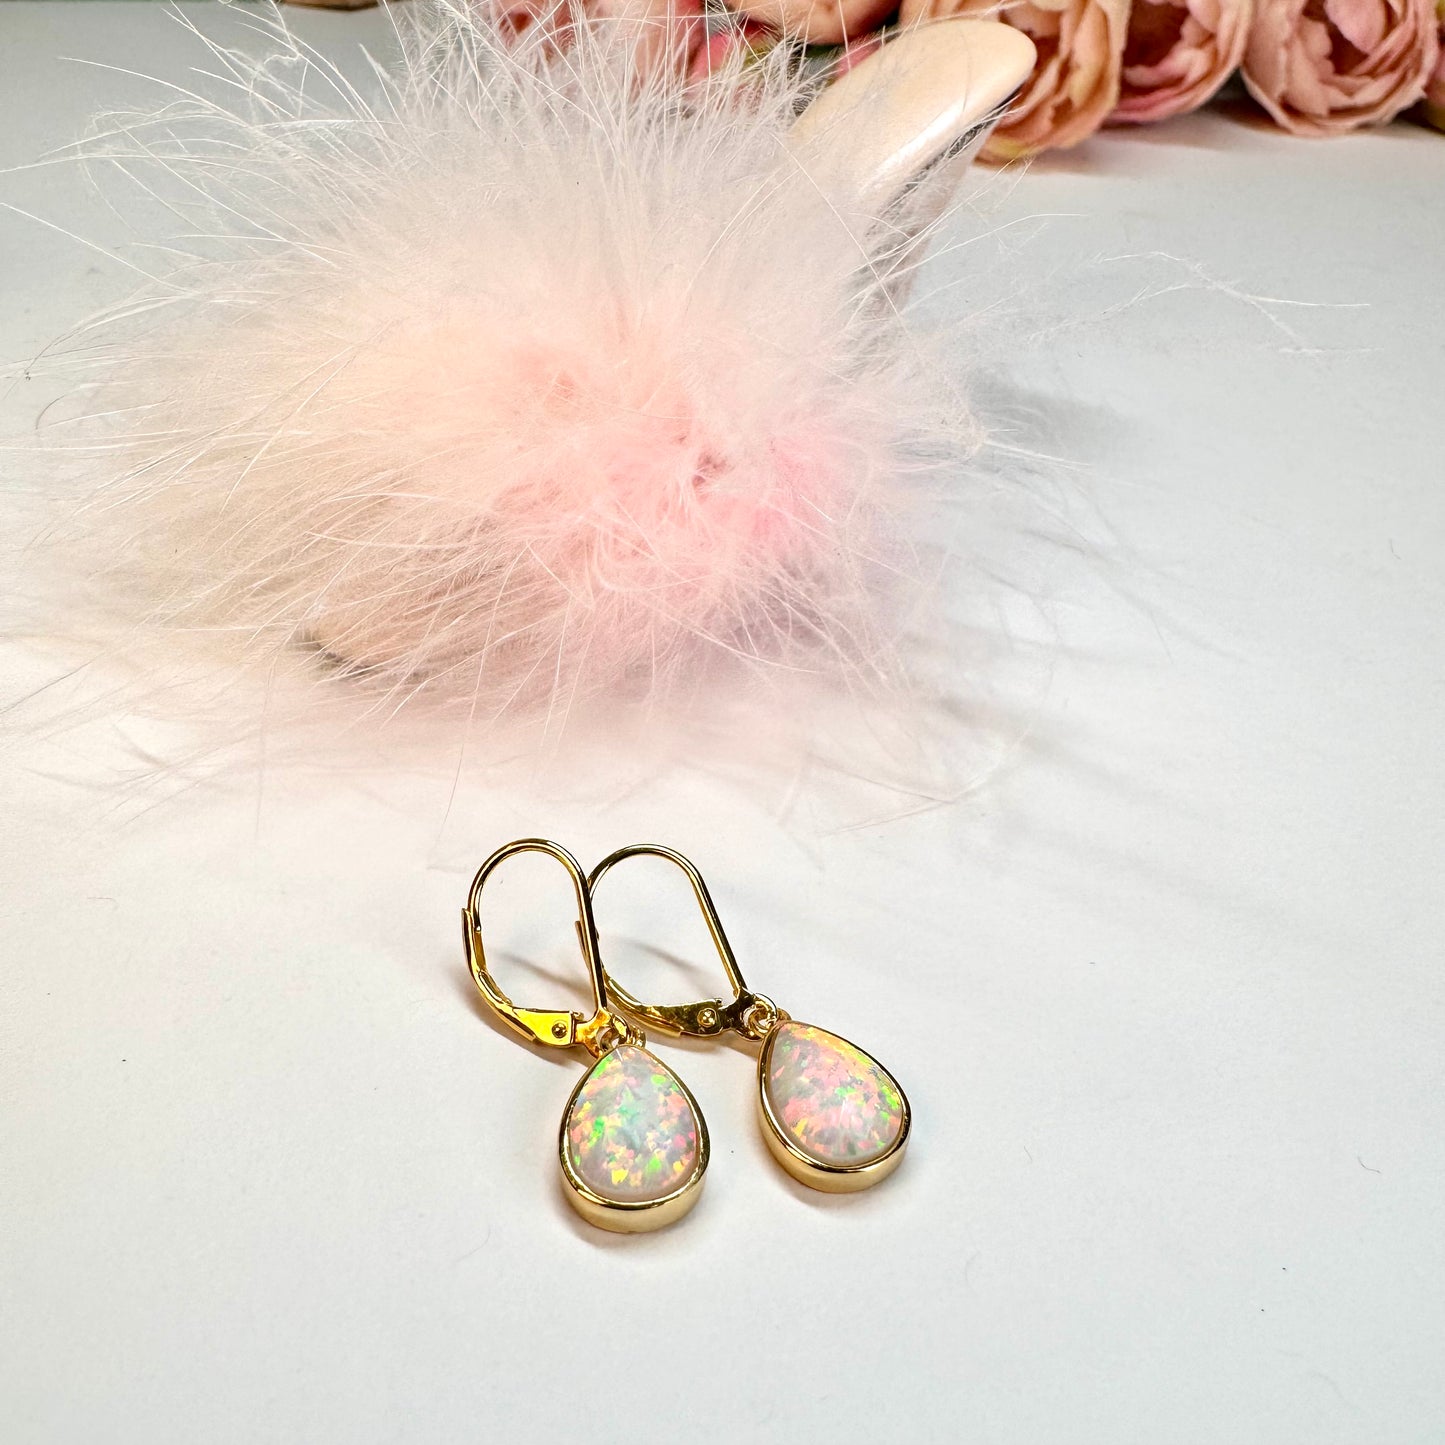 Klapp-Brisuren Ohrringe mit Tropfen Kritstall Opal, echt Silber-vergoldet